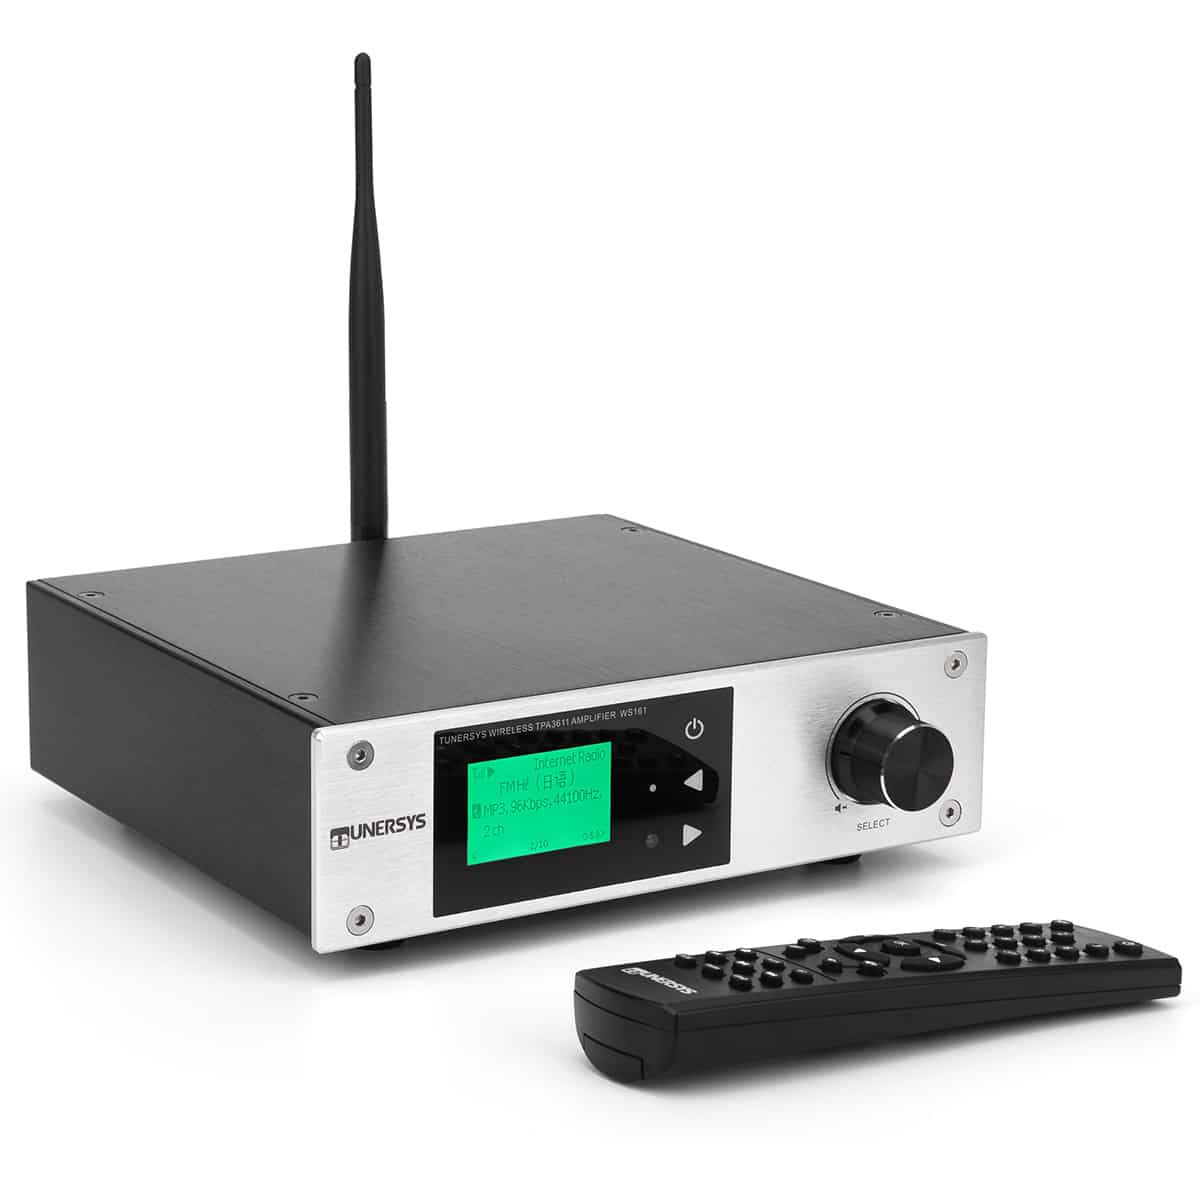 Luchten Dicht ondernemen Internet Radio Tuner Audio Wireless Stereo Receiver – TUNERSYS